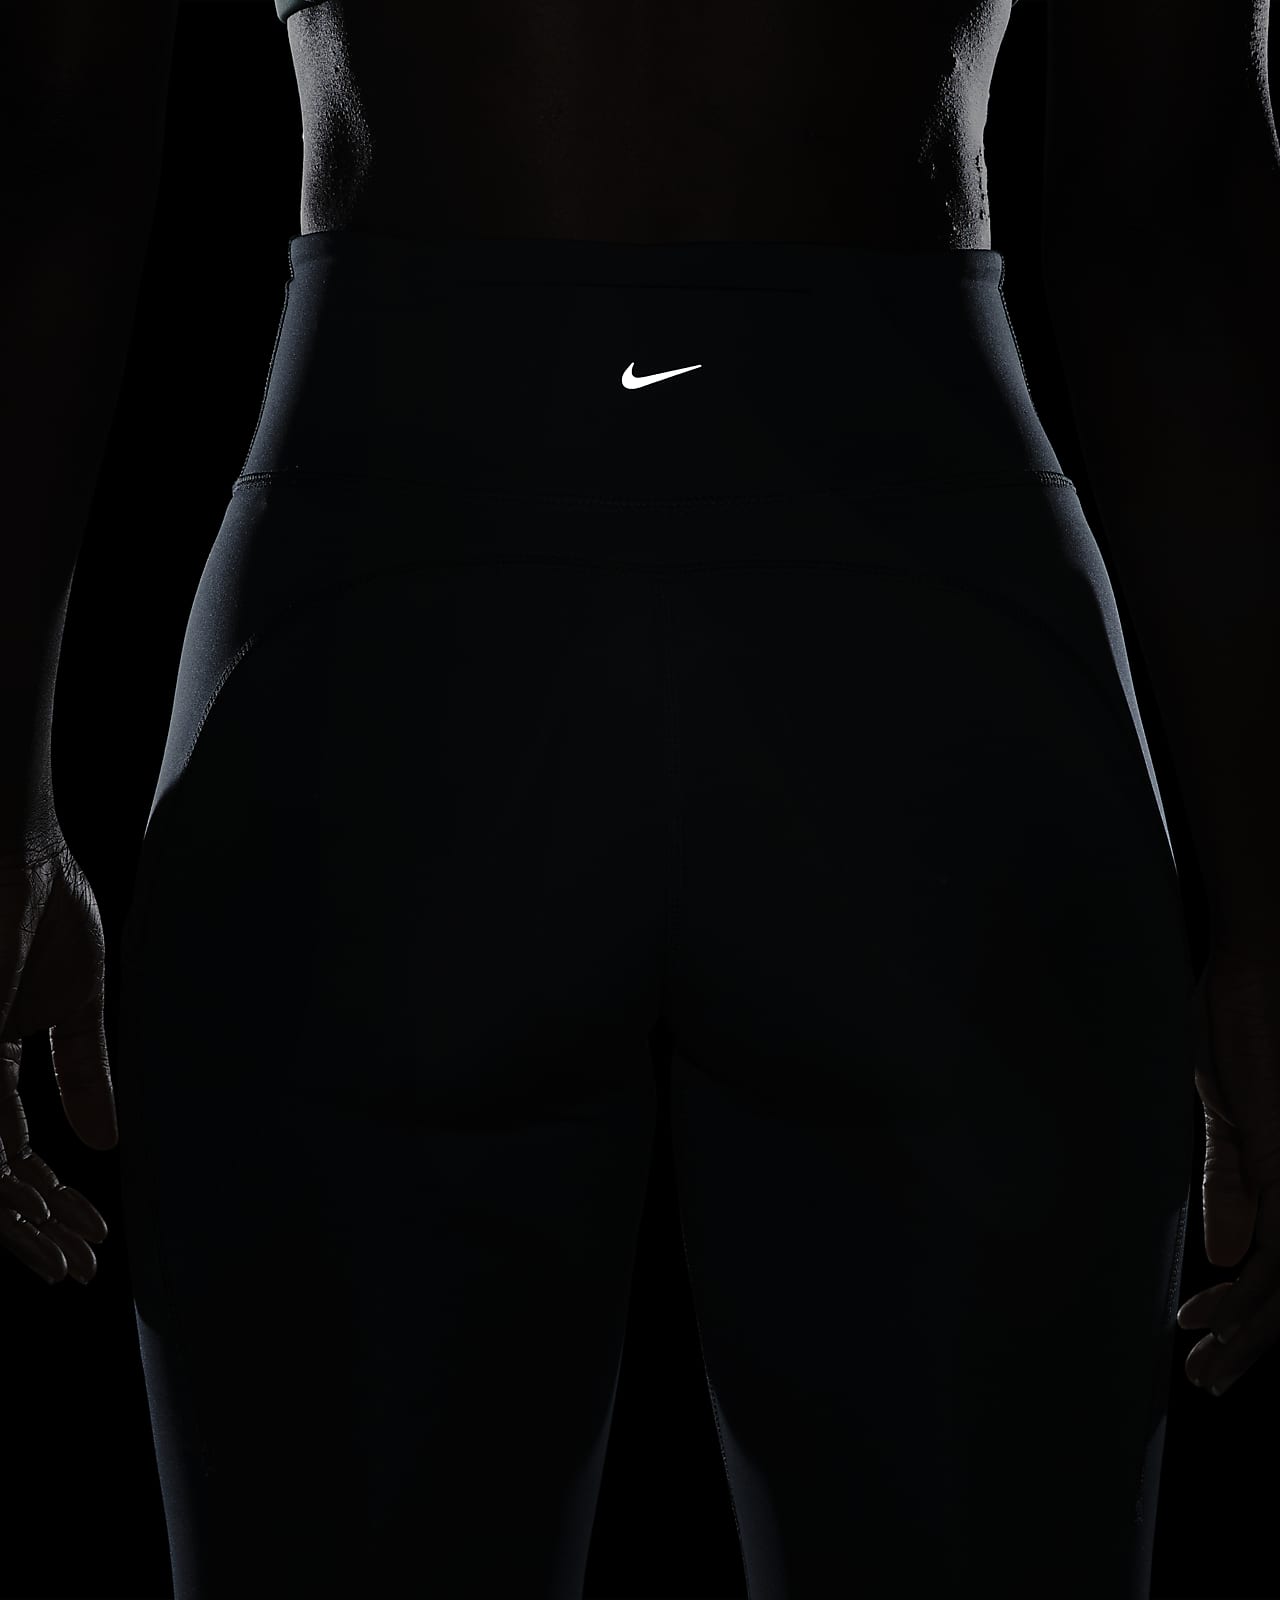 Nike Epic Luxe Women's Mid-Rise Full-Length Leggings.